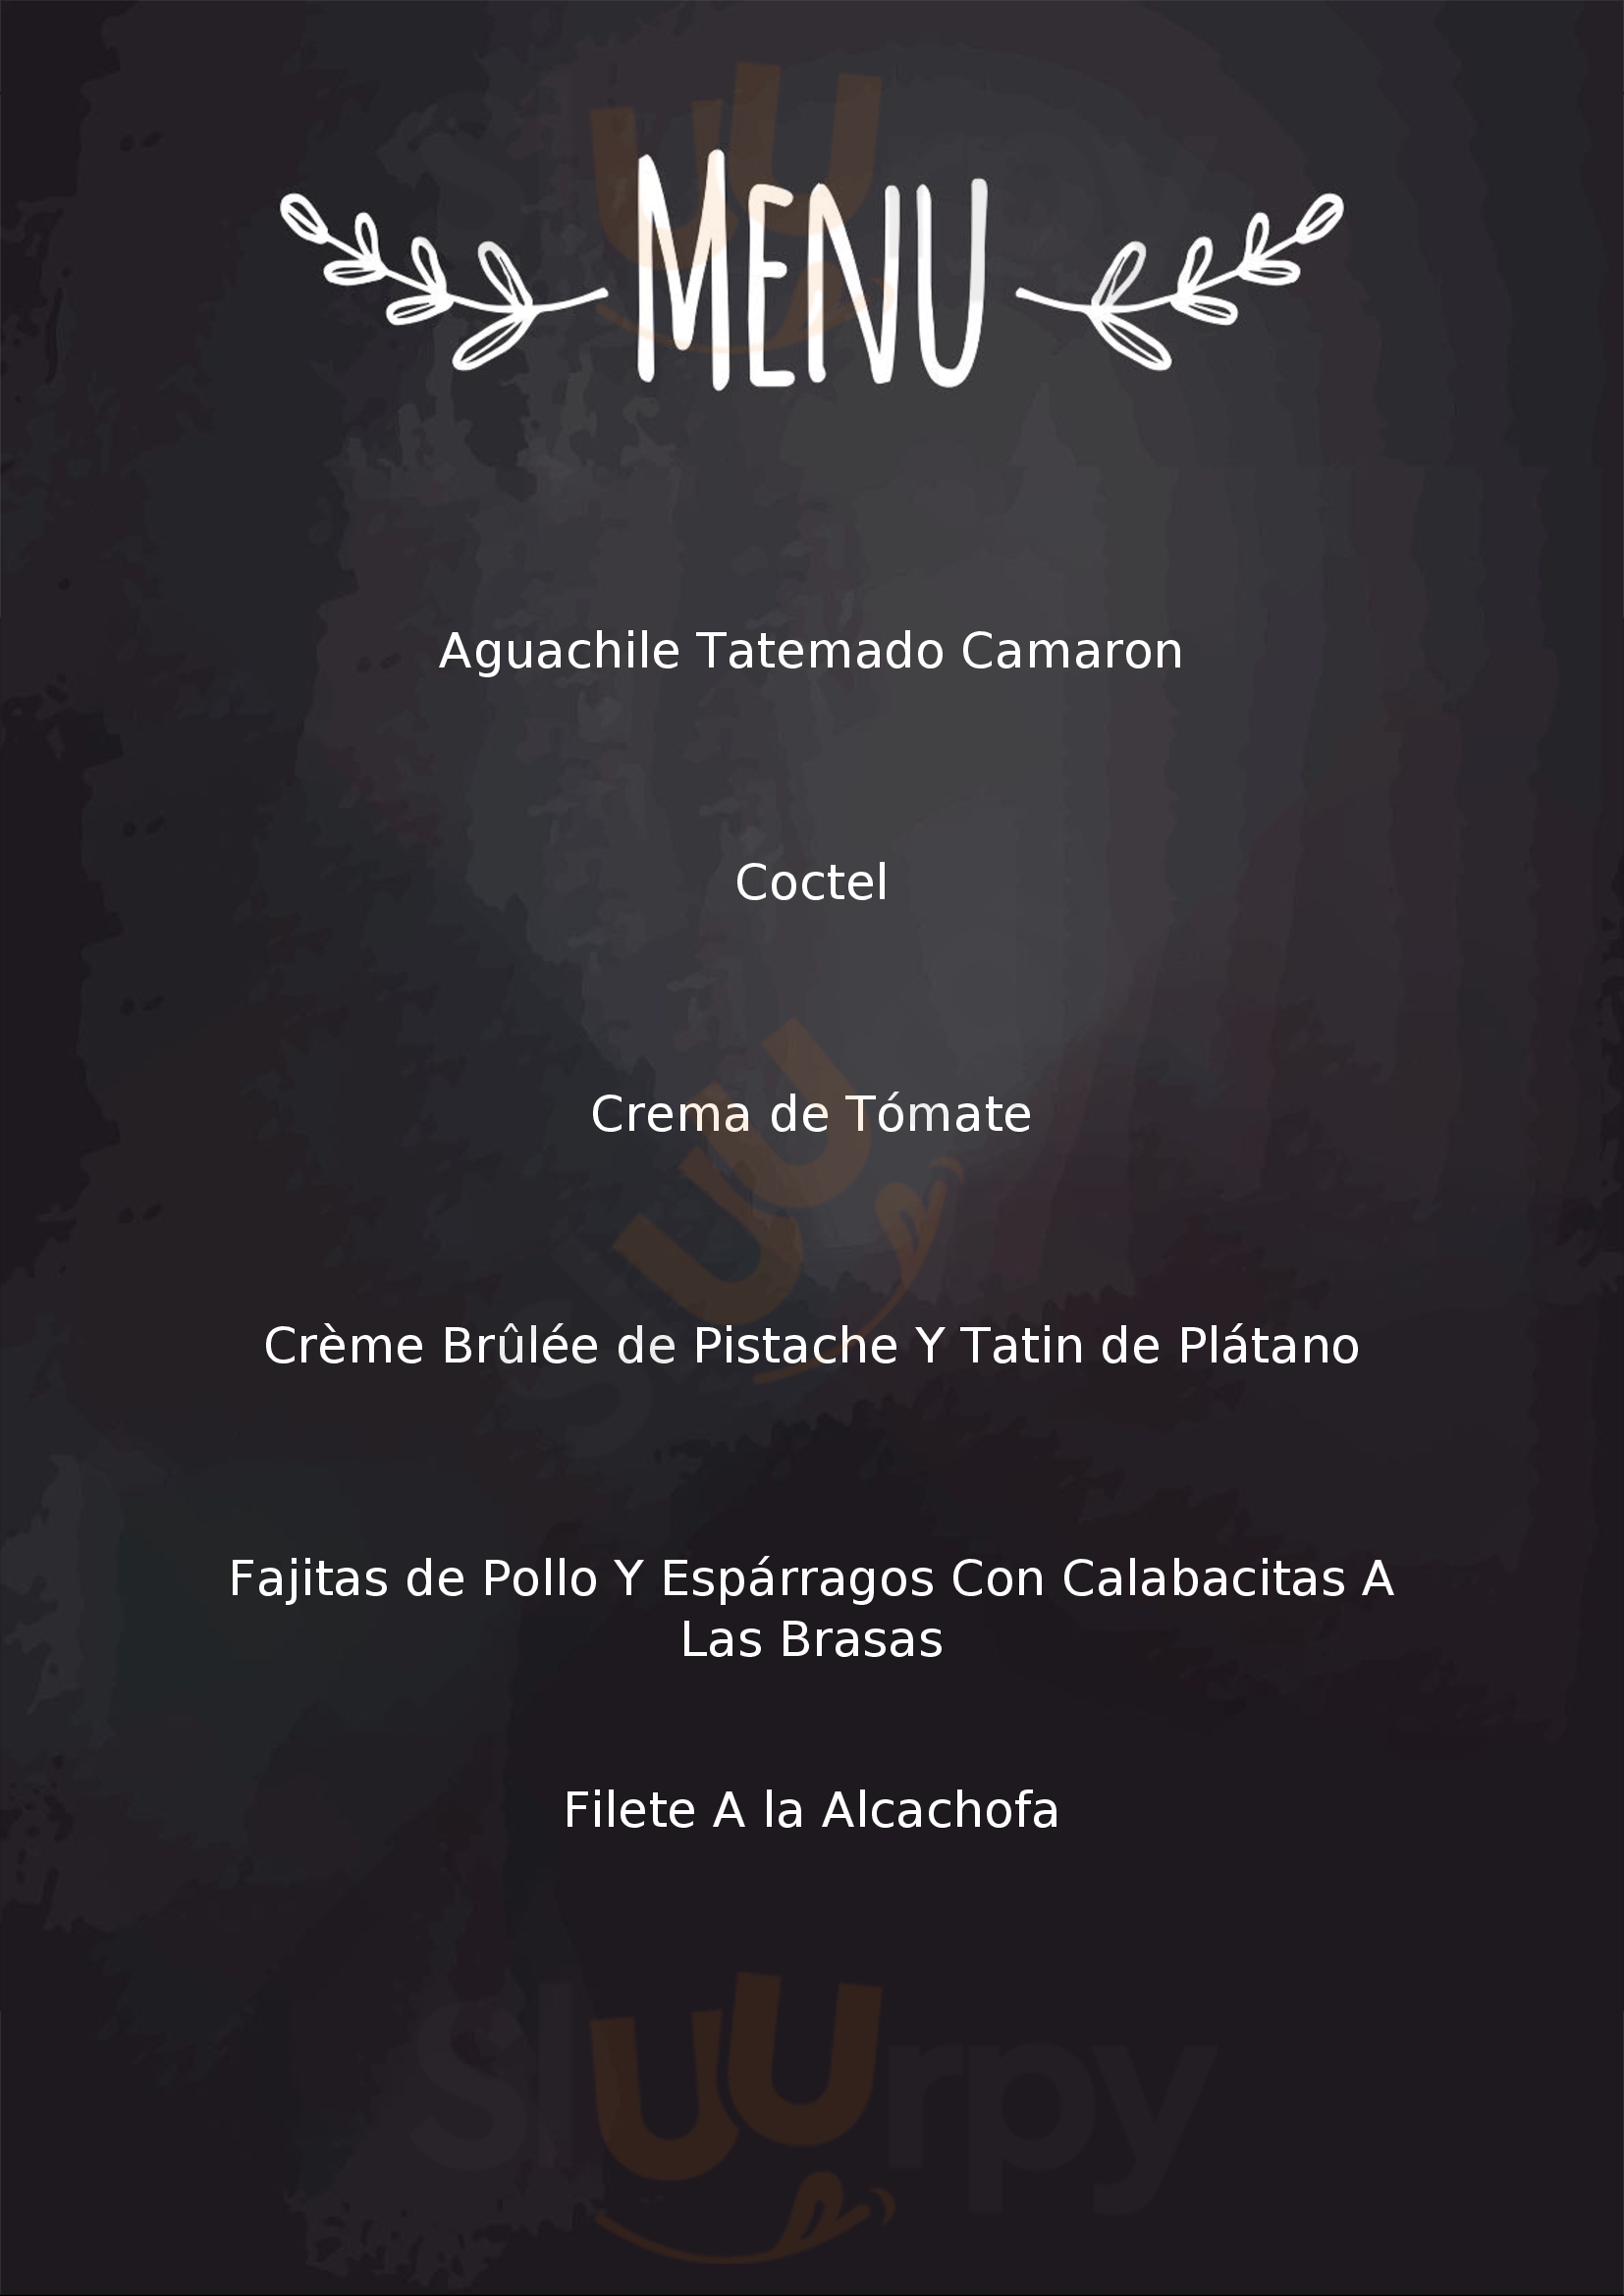 Restaurant Menta Negra Guadalajara Menu - 1